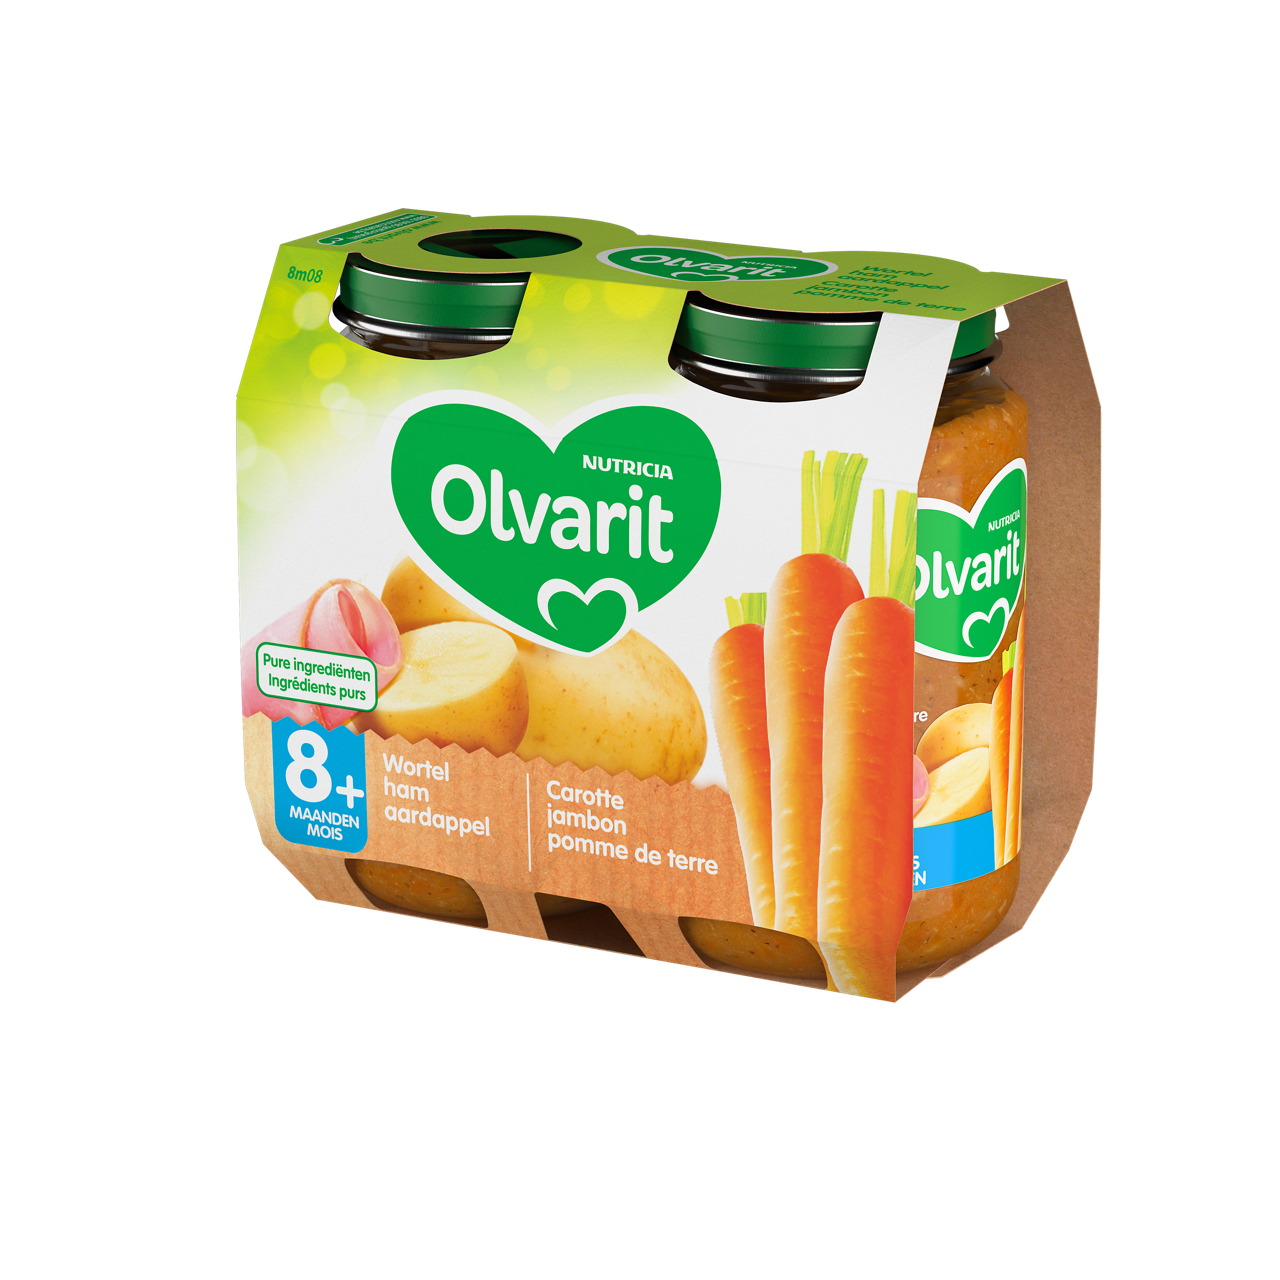 Olvarit Carotte Dinde Pomme de terre (250 g). Consultez notre site web Olvarit.be pour plus d'info sur alimentation pour bébé et les produits Olvarit.